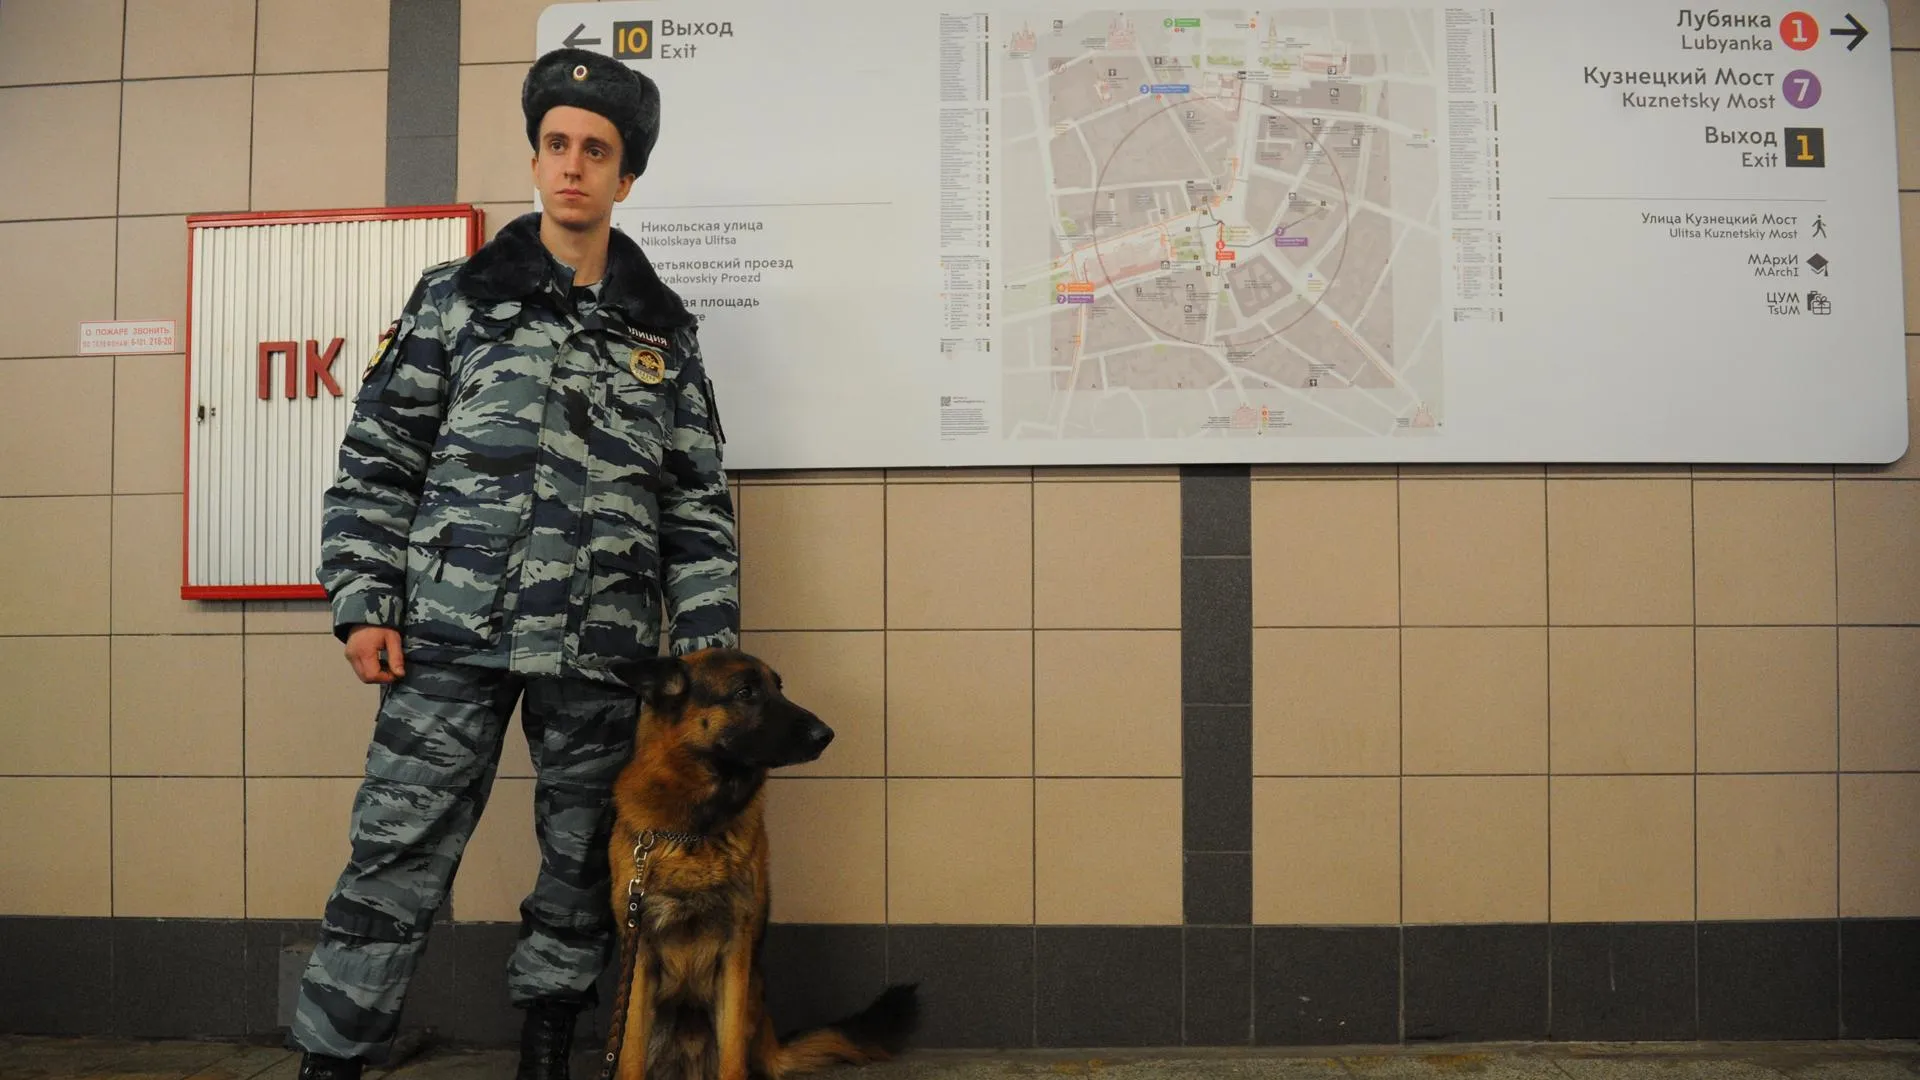 Метро Москвы продолжает работать в режиме усиленных мер безопасности